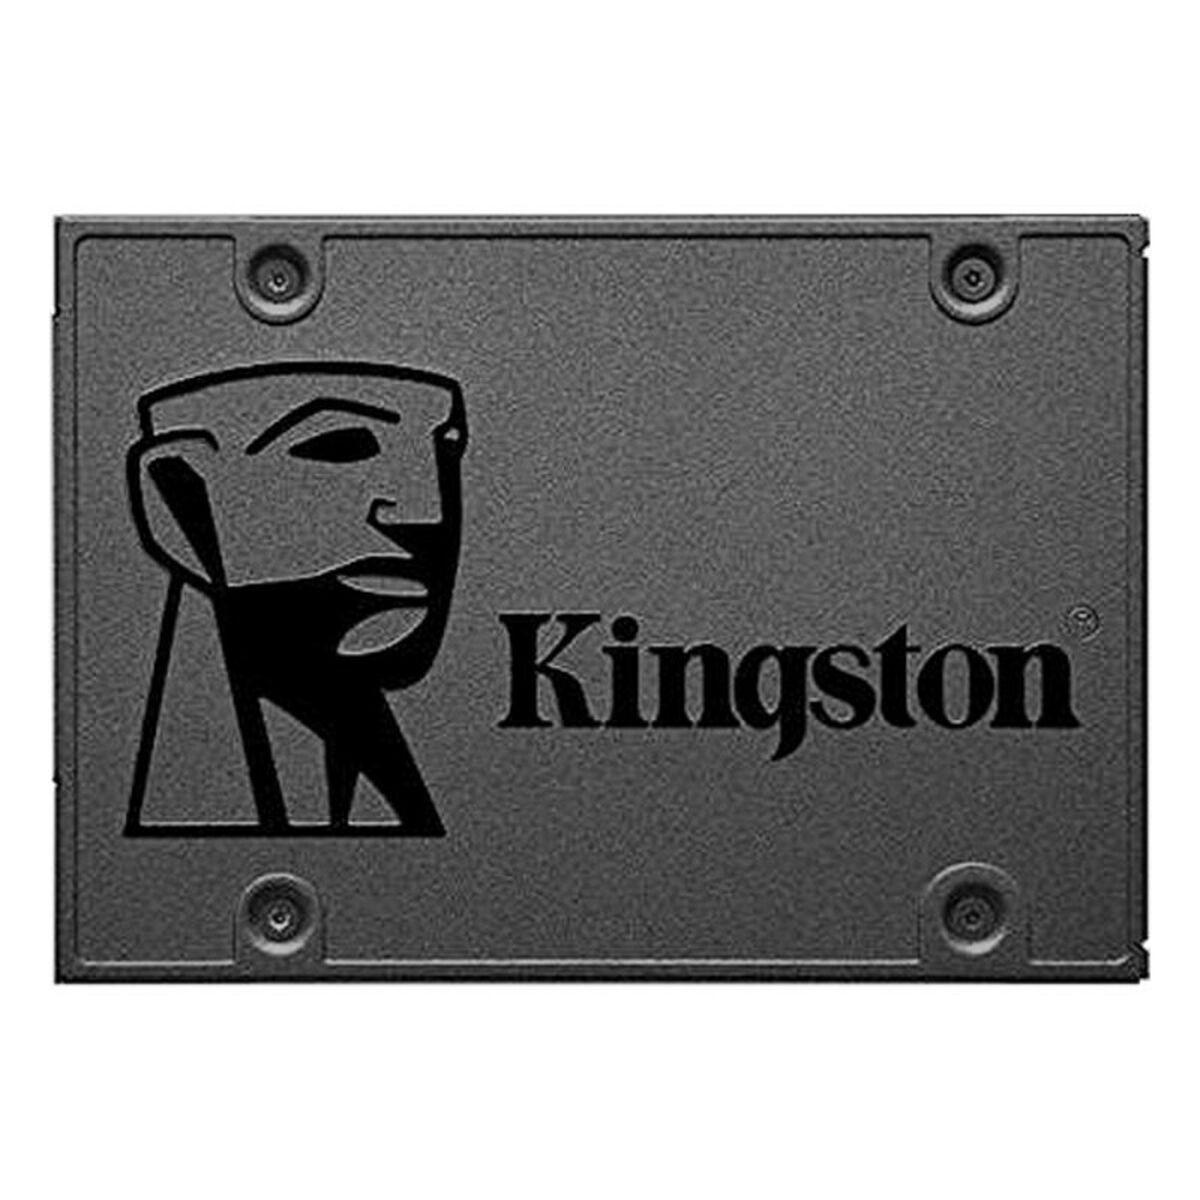 Se Kingston 960GB A400 SATA3 2.5 SSD (7mm height) hos Boligcenter.dk